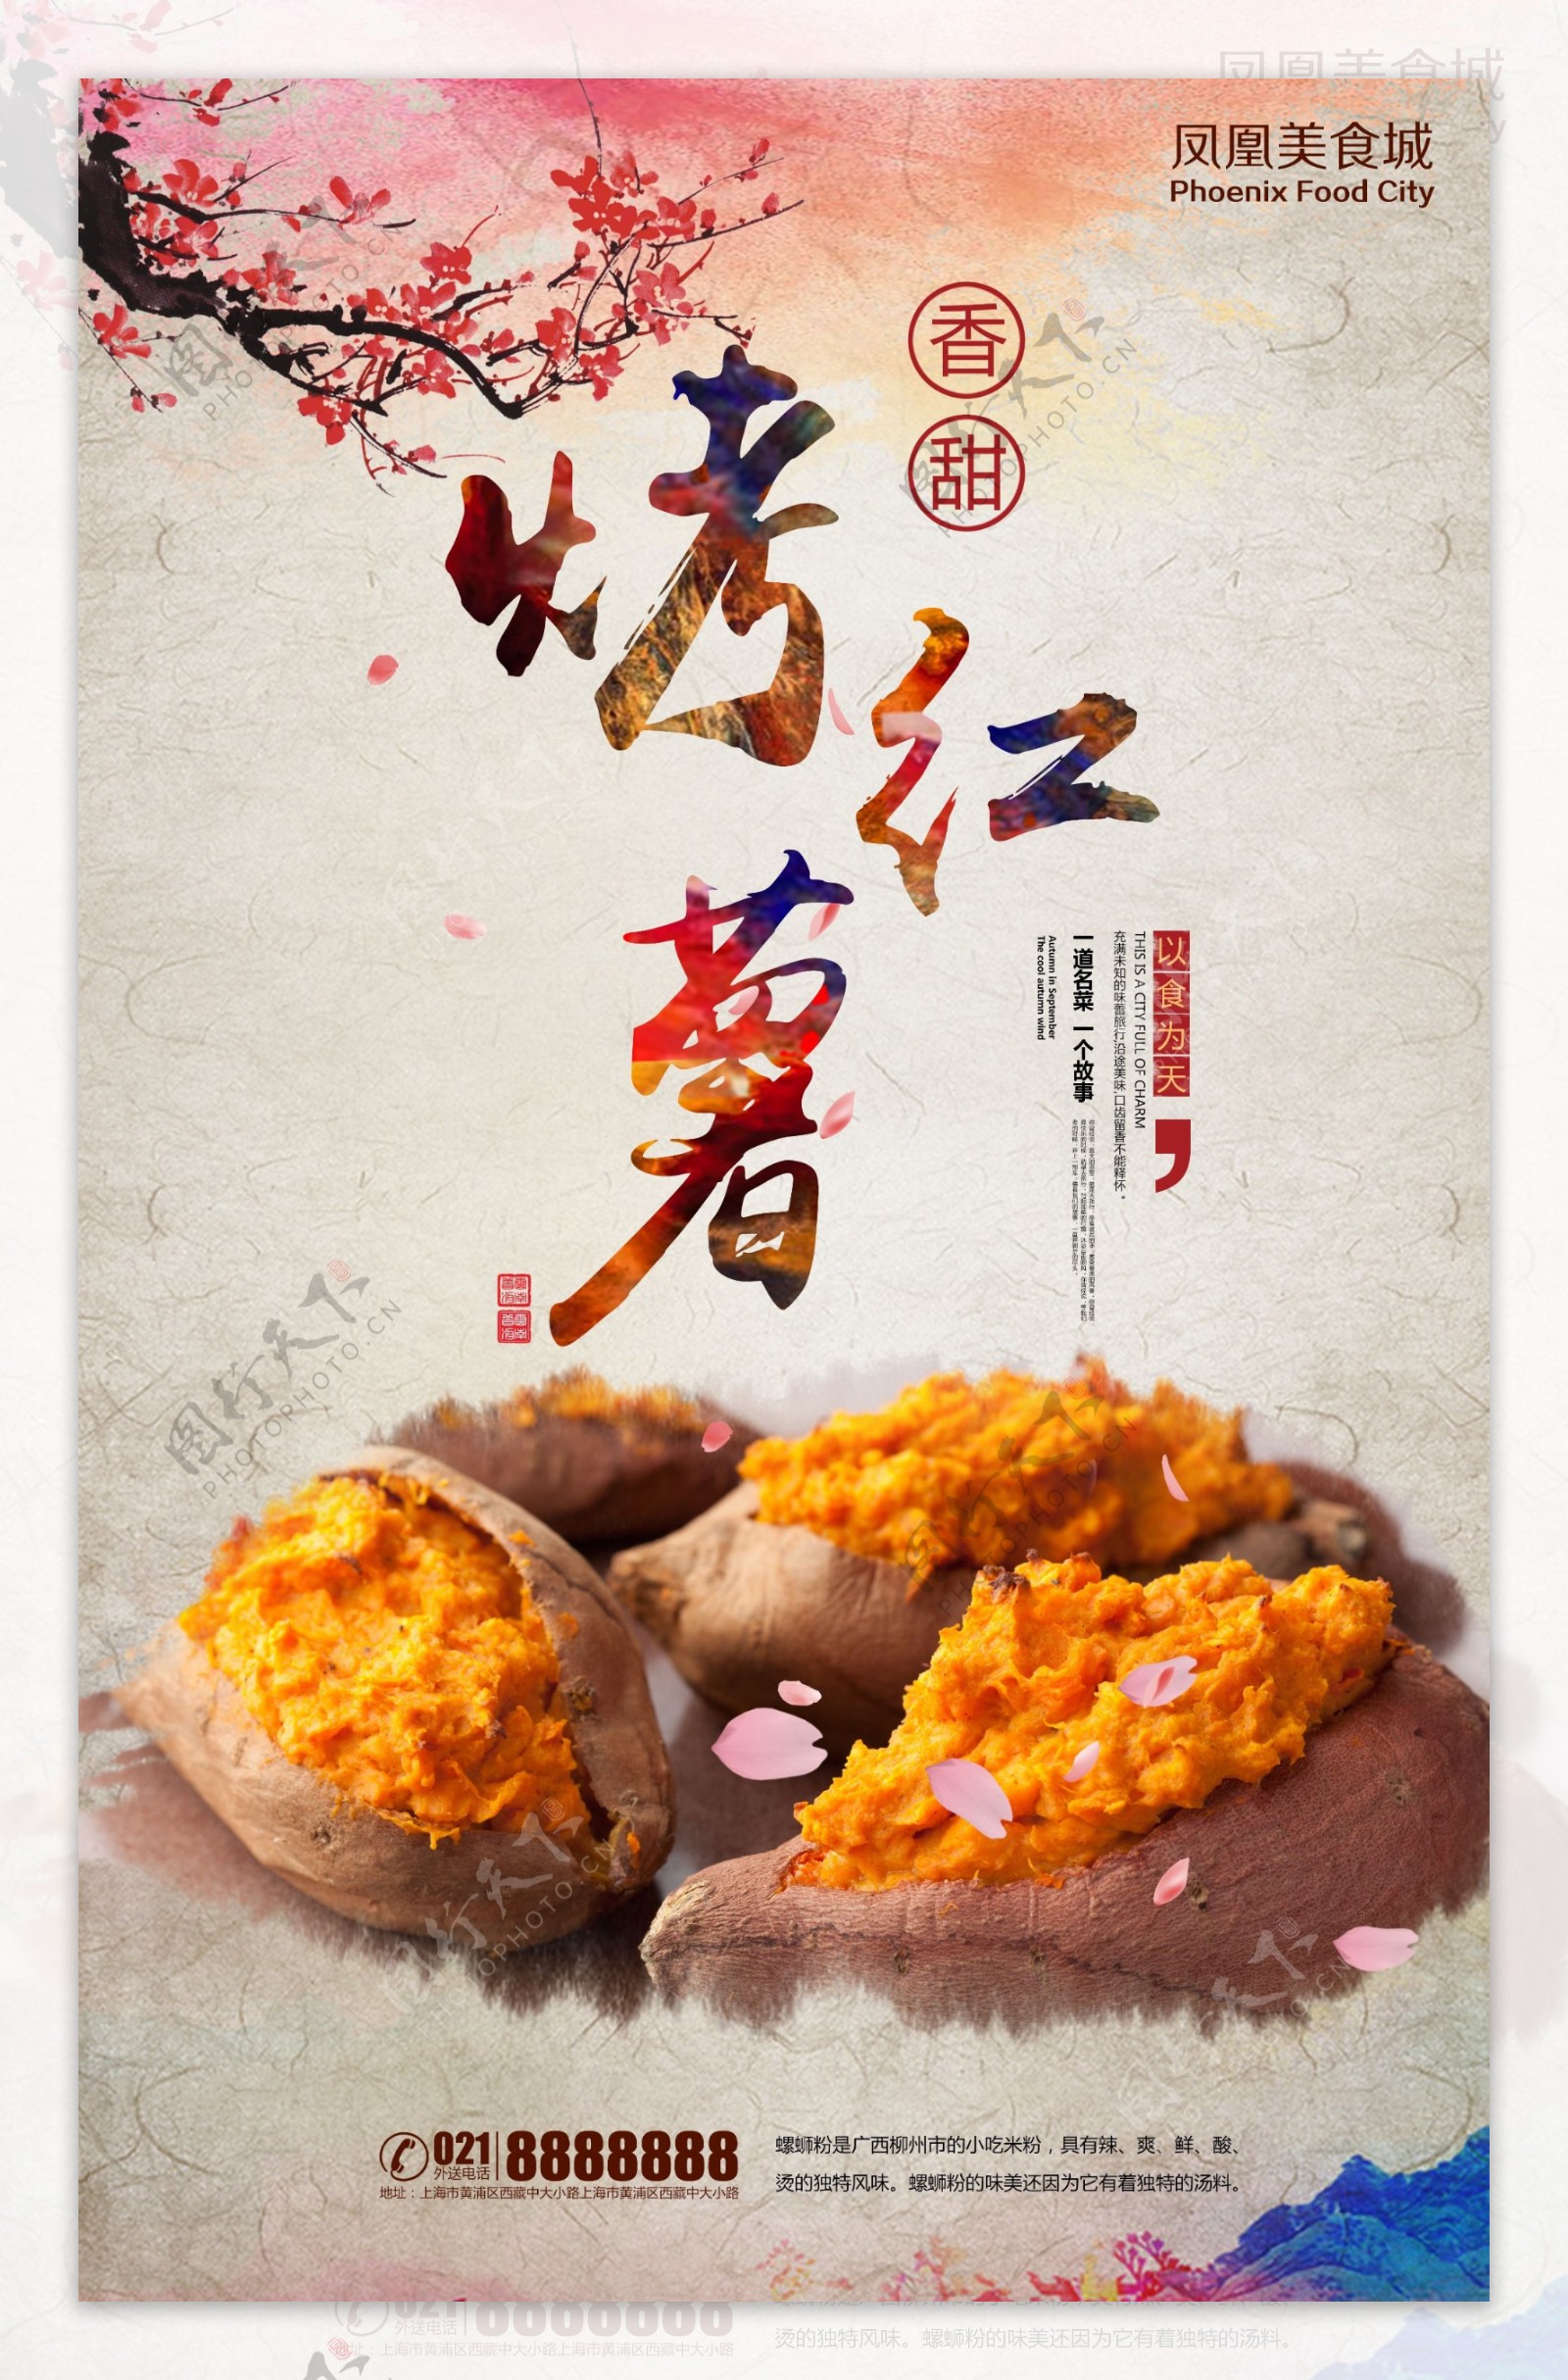 中国风香甜烤红薯餐饮美食海报